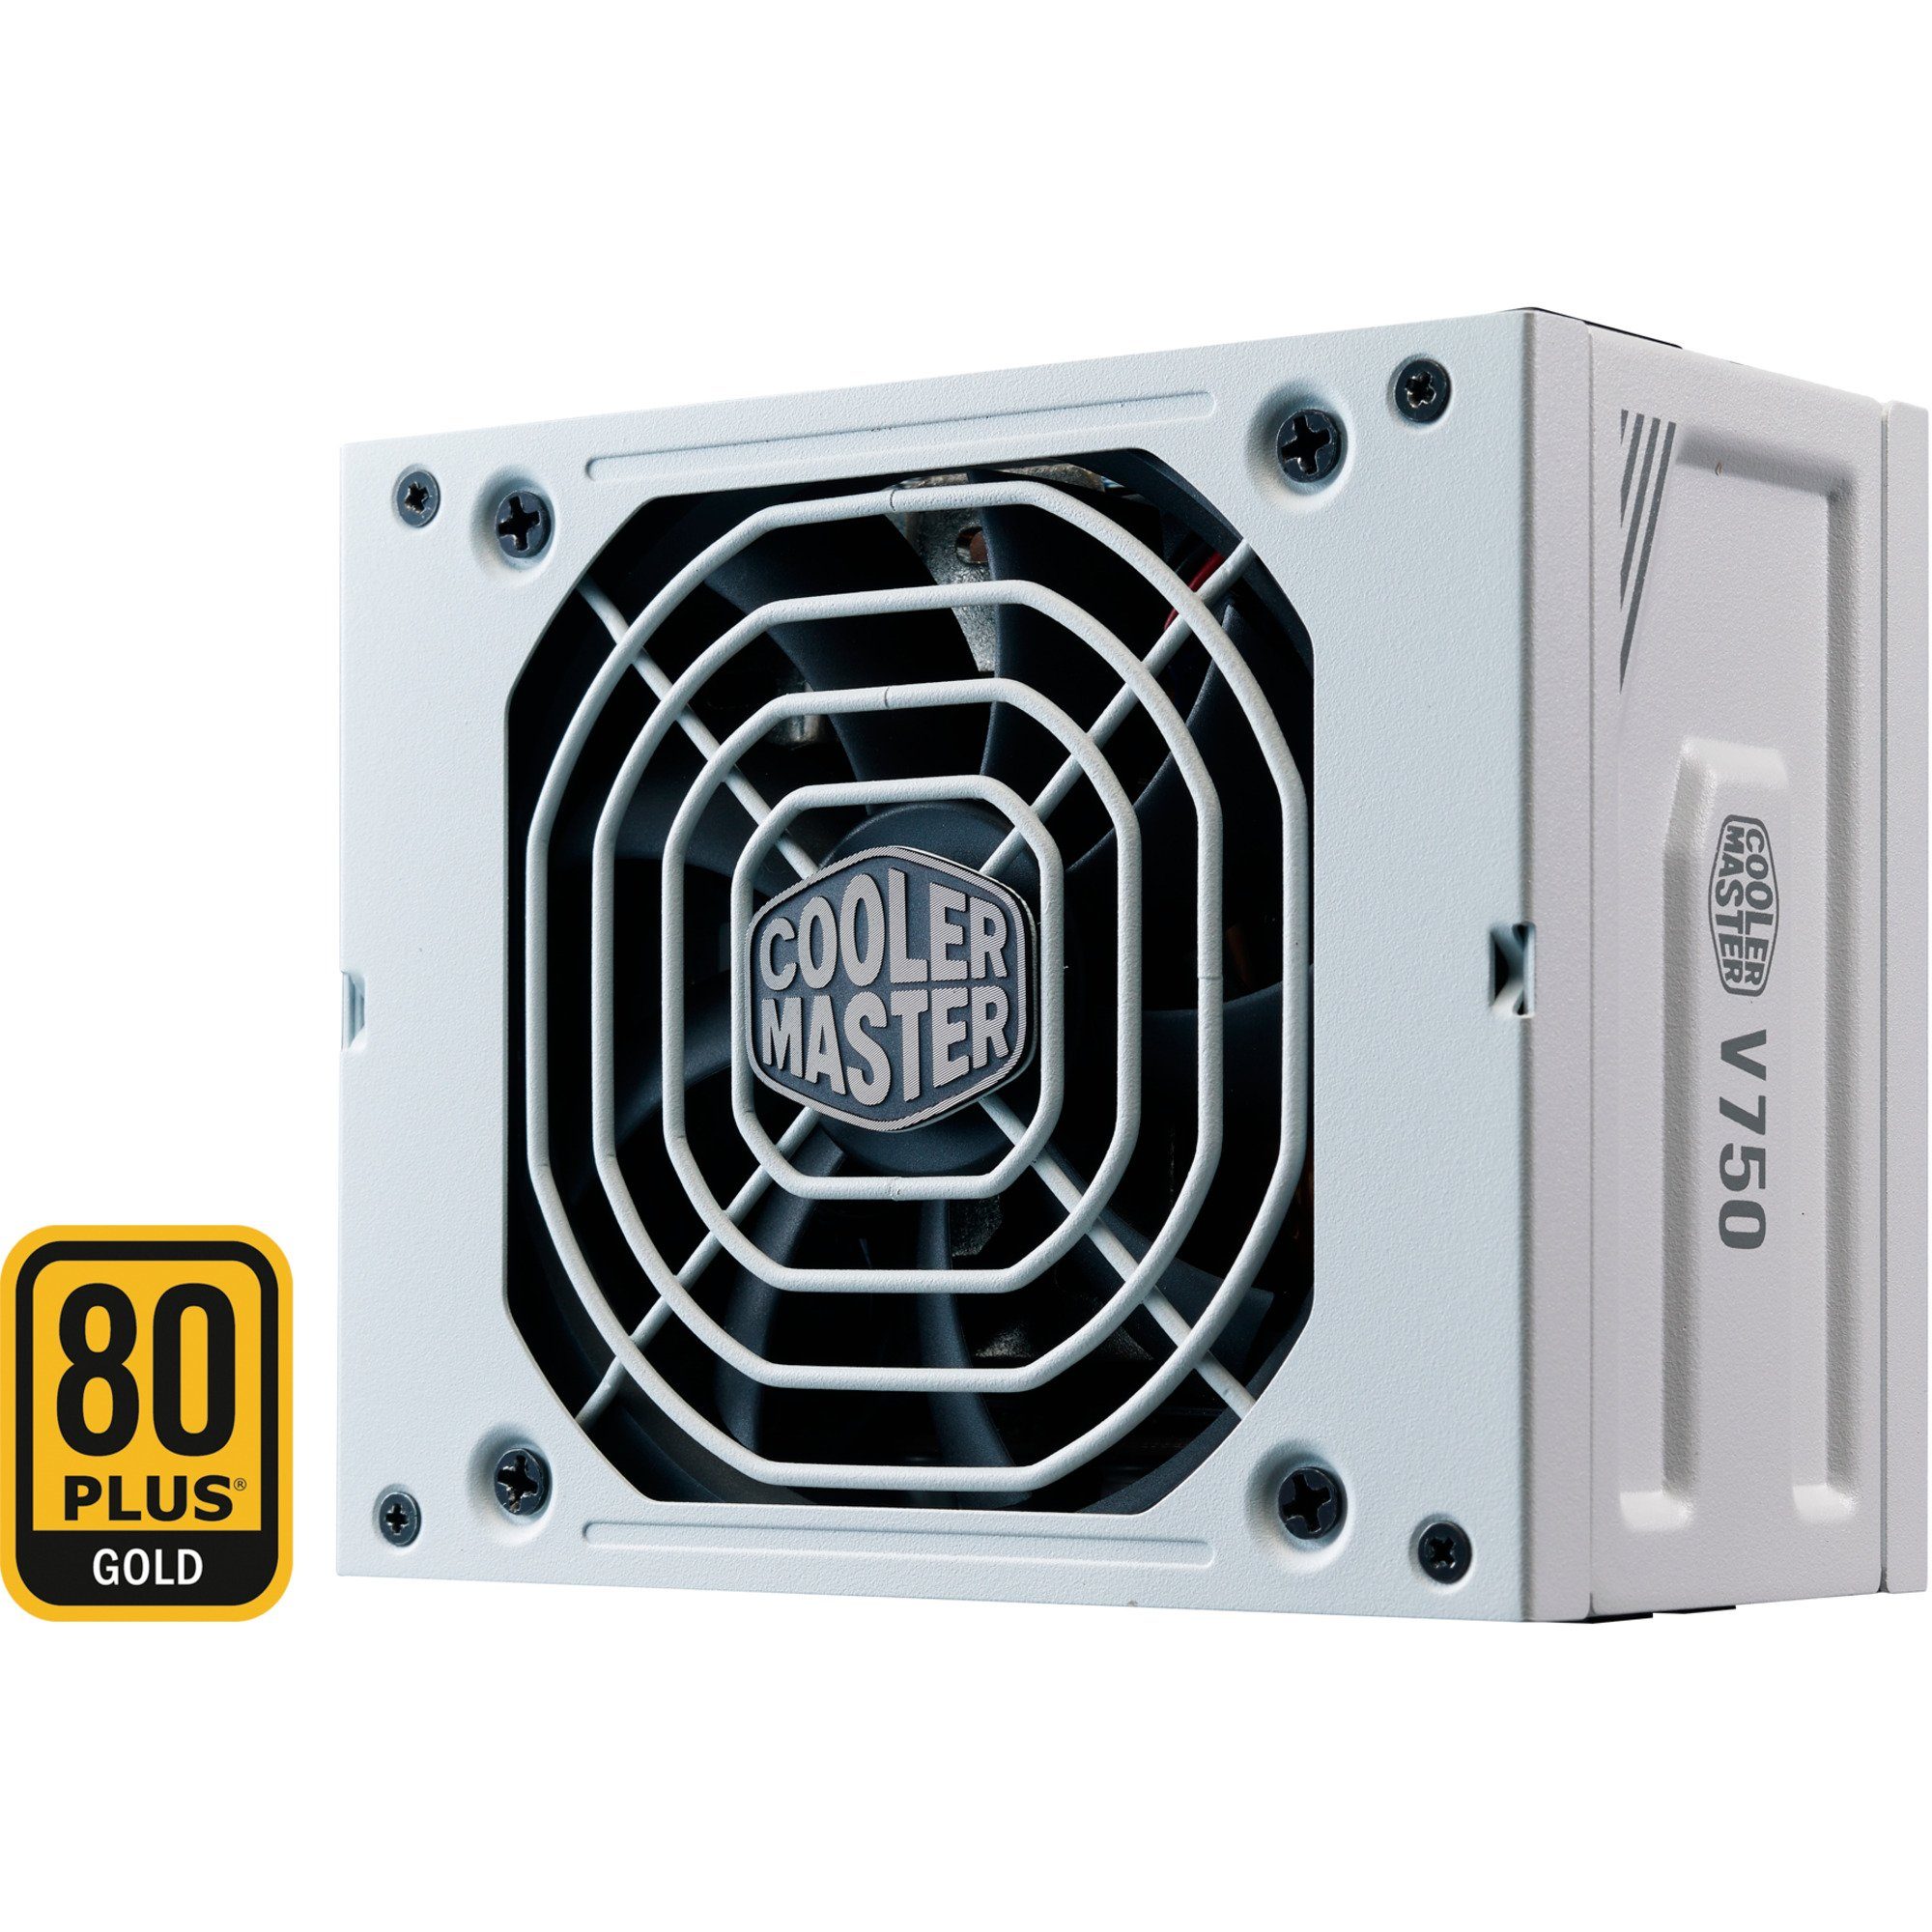 COOLER MASTER »V750 SFX GOLD 750W WHITE EDITION« PC-Netzteil online kaufen  | OTTO